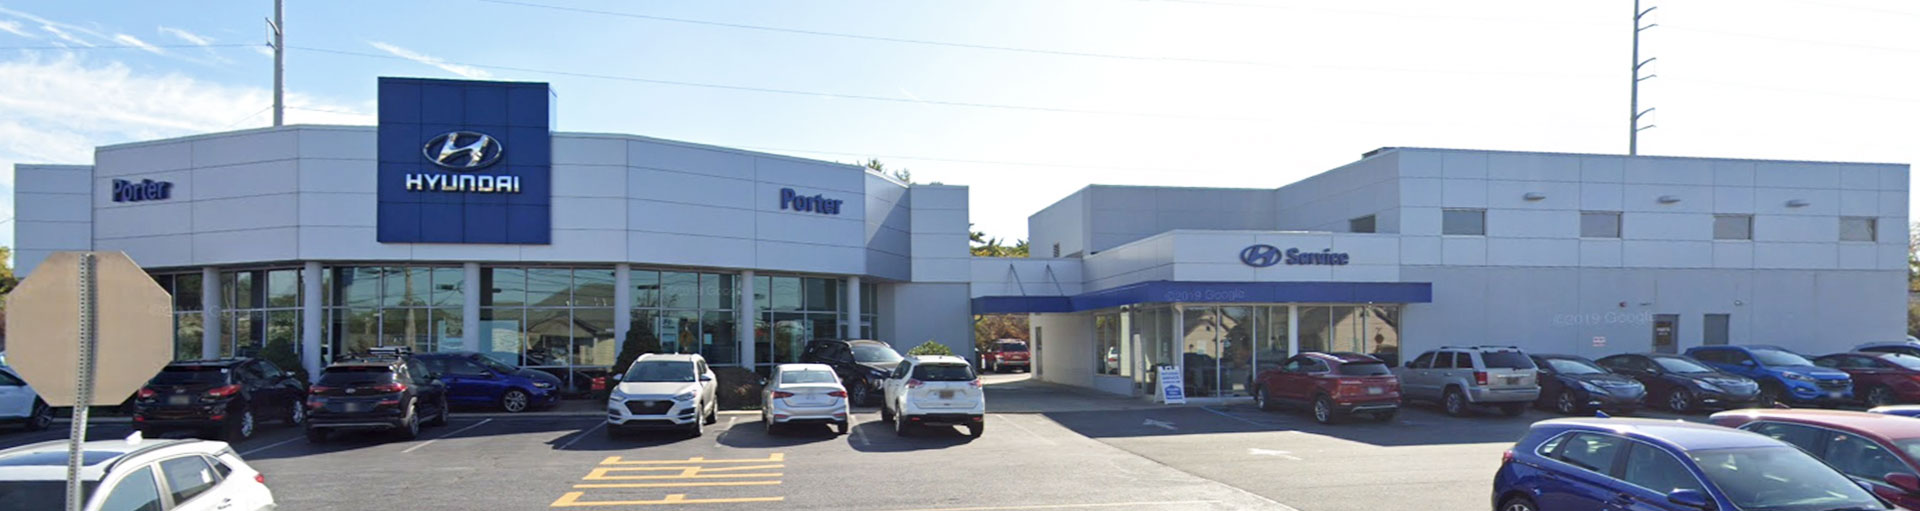 Porter Hyundai Service Specials